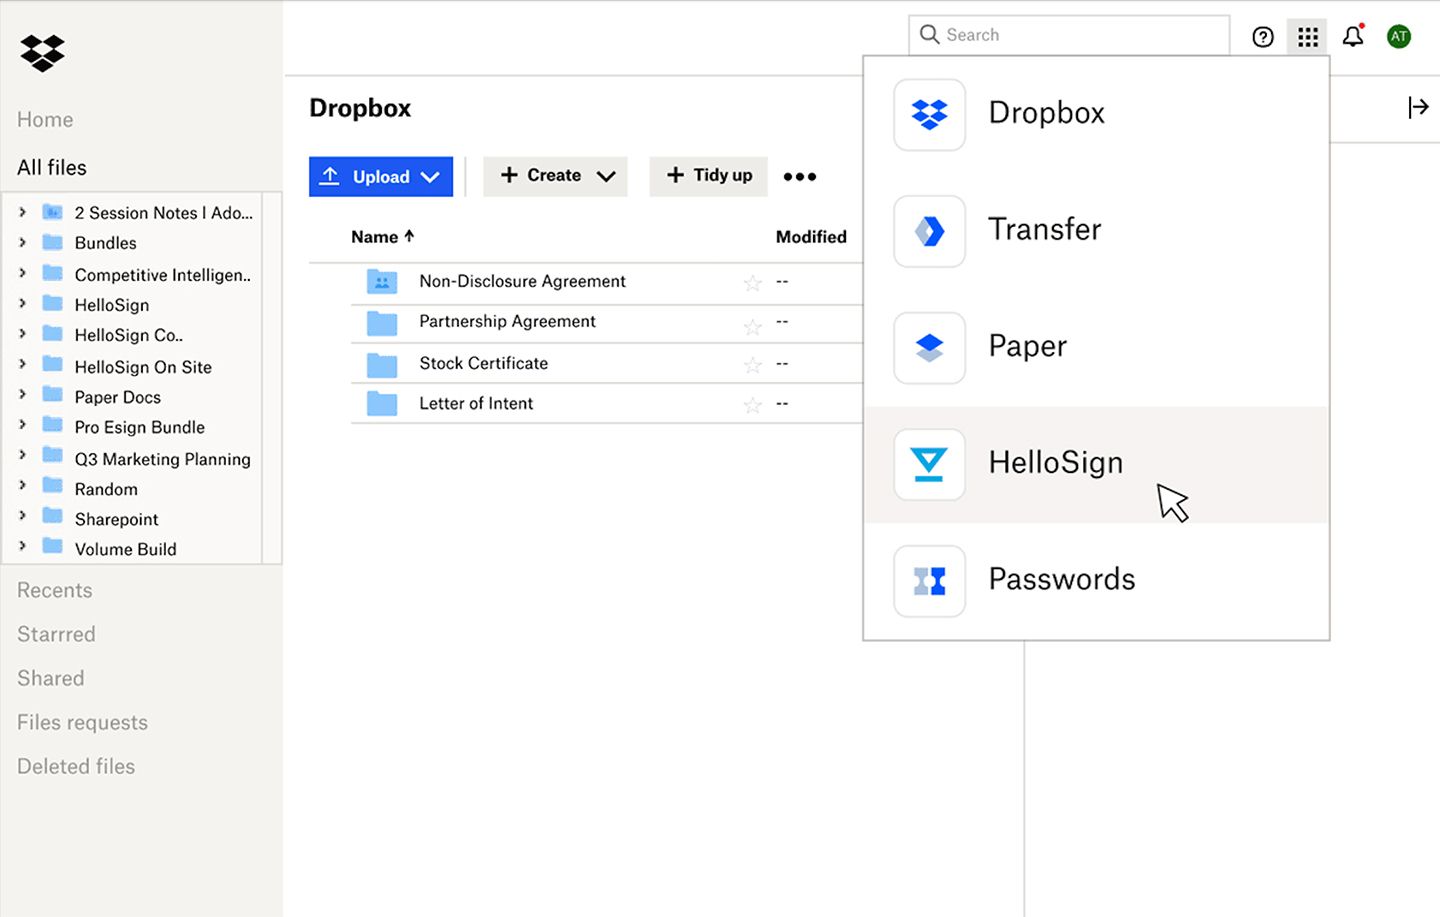 L'interfaccia di Dropbox con un utente che seleziona HelloSign da un menu a discesa di prodotti